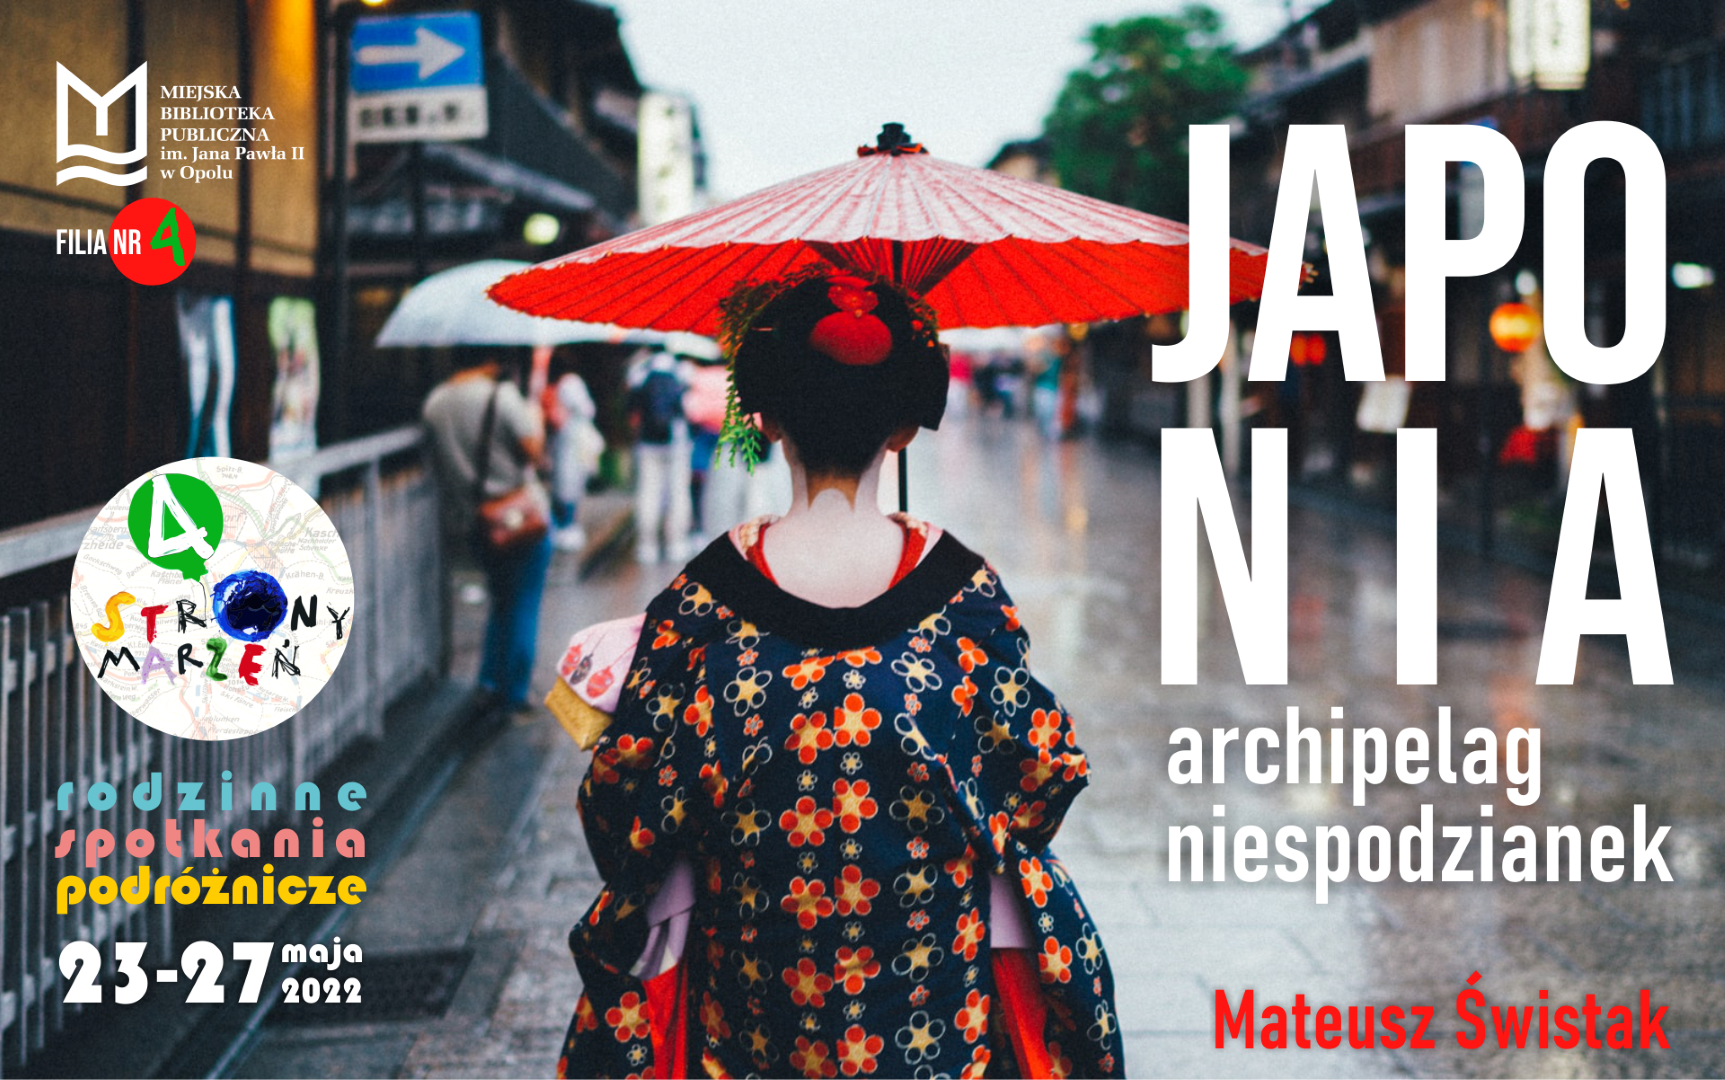 „Japonia – archipelag niespodzianek” – rodzinne spotkanie podróżnicze z Mateuszem Świstakiem